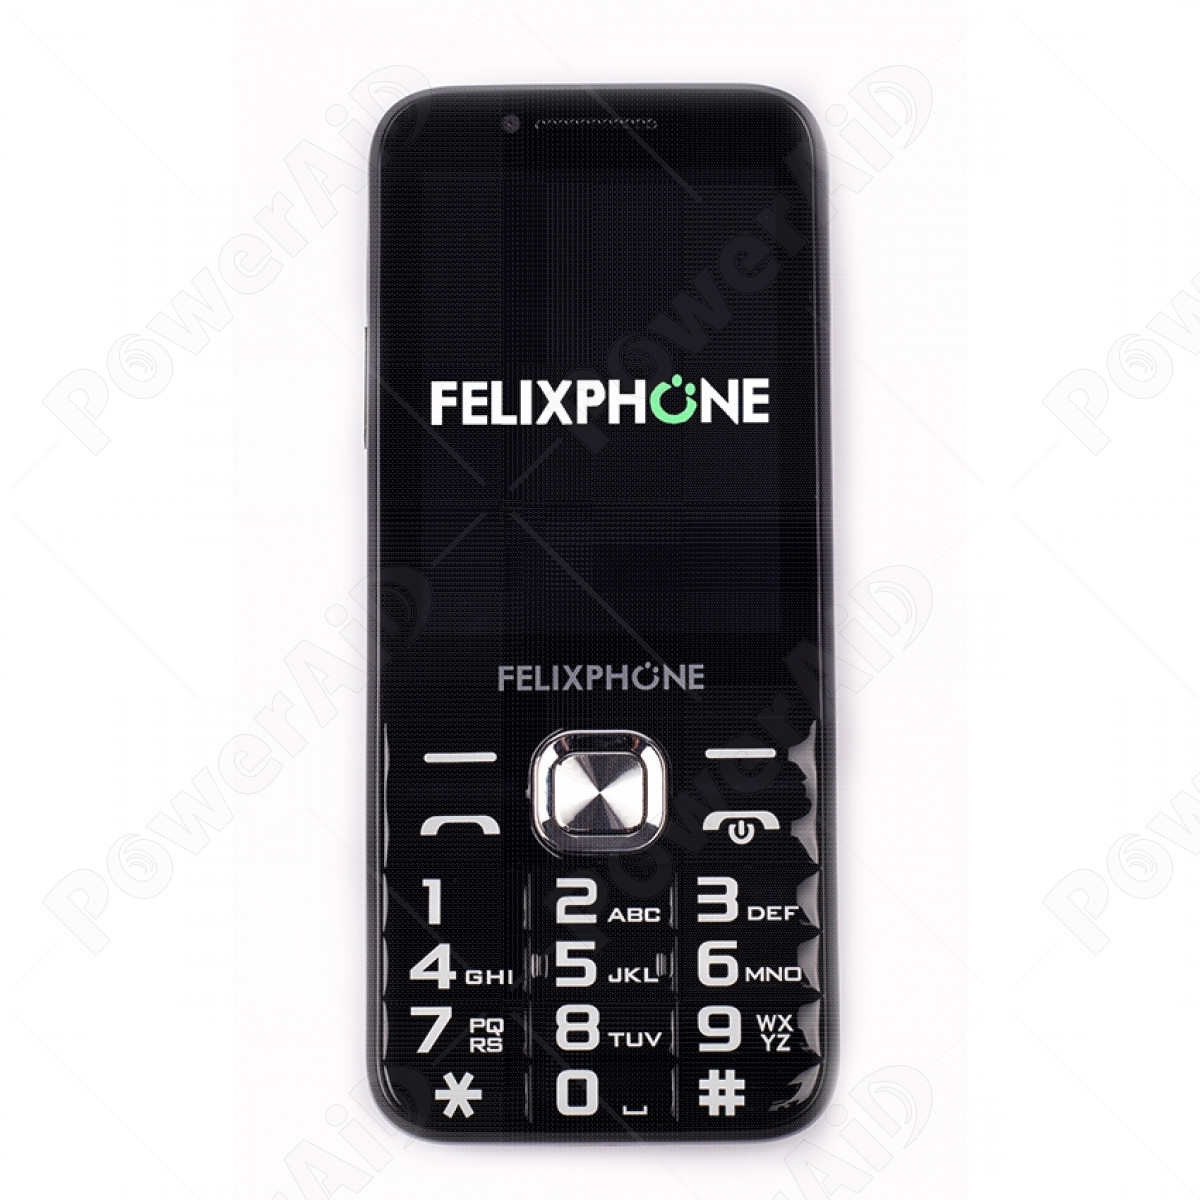 Felixphone Cellulare parlante per ipovedenti e non vedenti